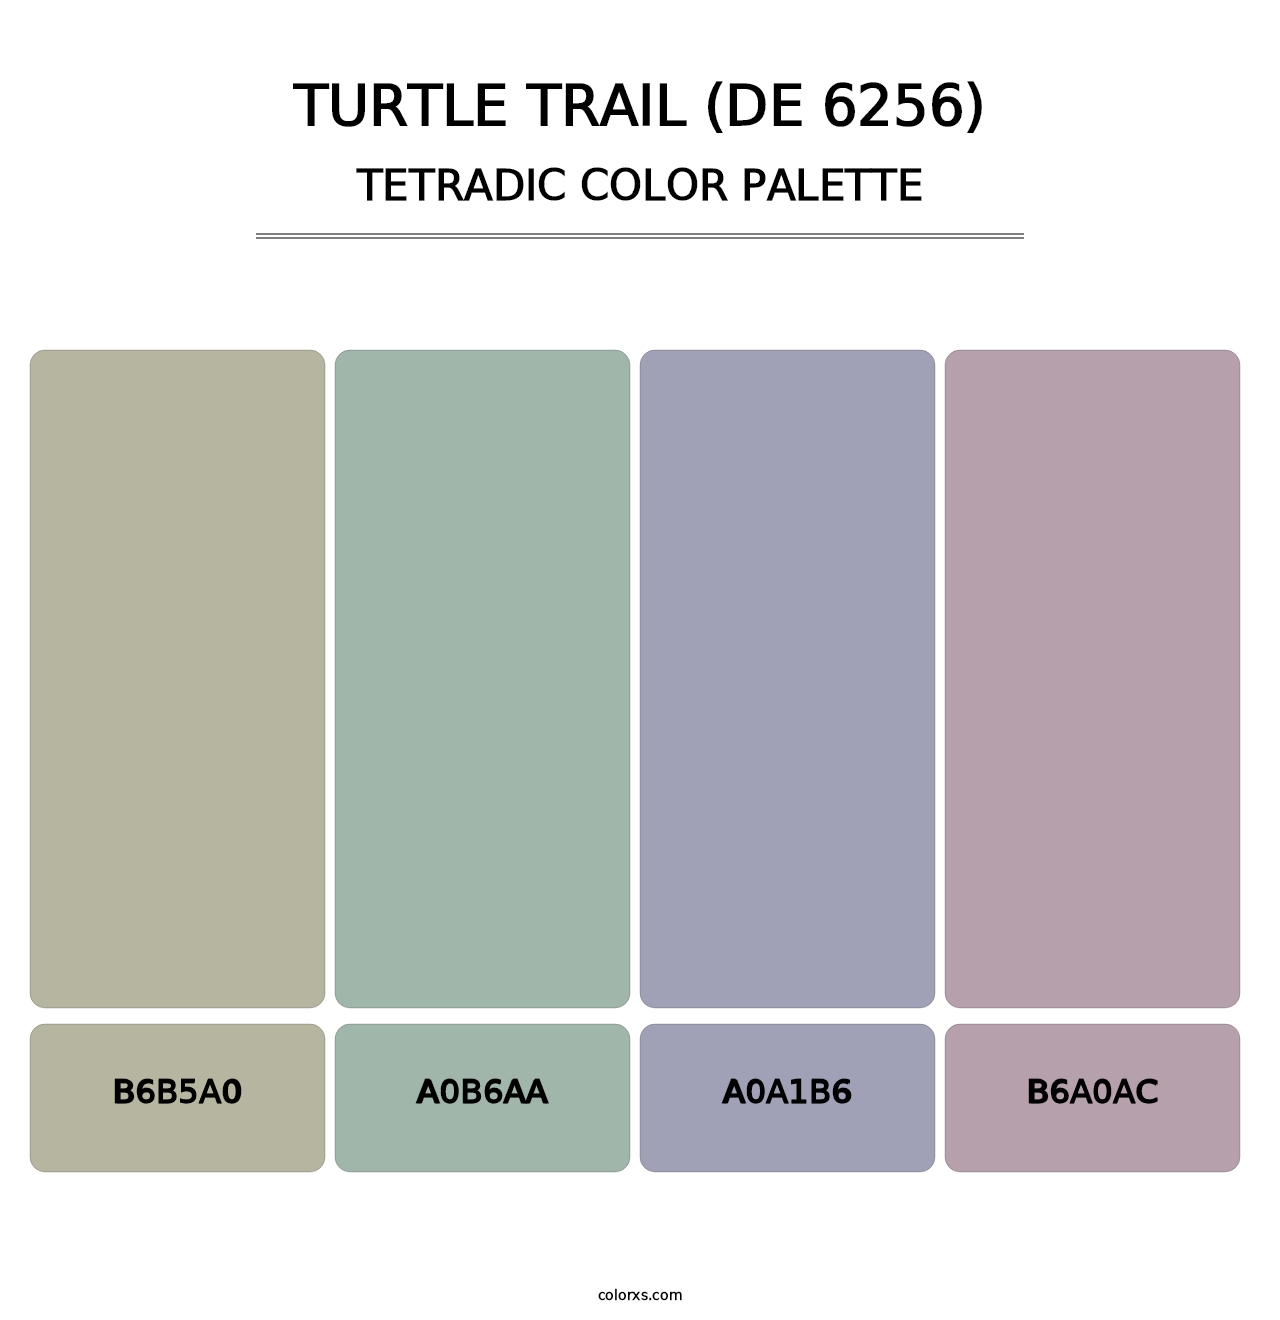 Turtle Trail (DE 6256) - Tetradic Color Palette